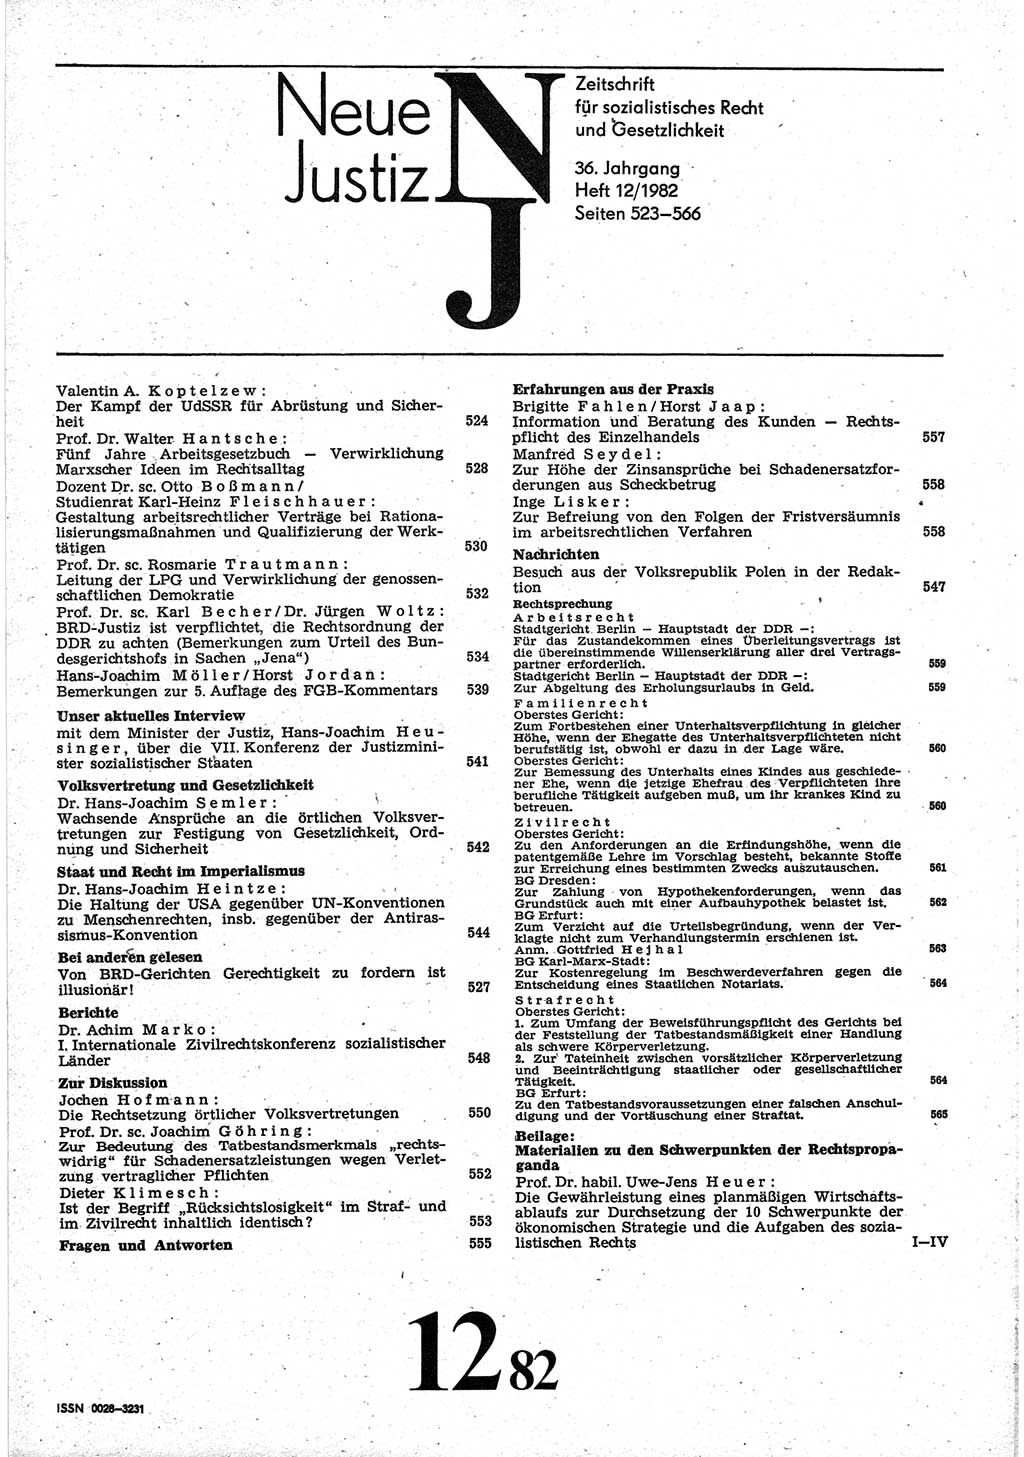 Neue Justiz (NJ), Zeitschrift für sozialistisches Recht und Gesetzlichkeit [Deutsche Demokratische Republik (DDR)], 36. Jahrgang 1982, Seite 523 (NJ DDR 1982, S. 523)